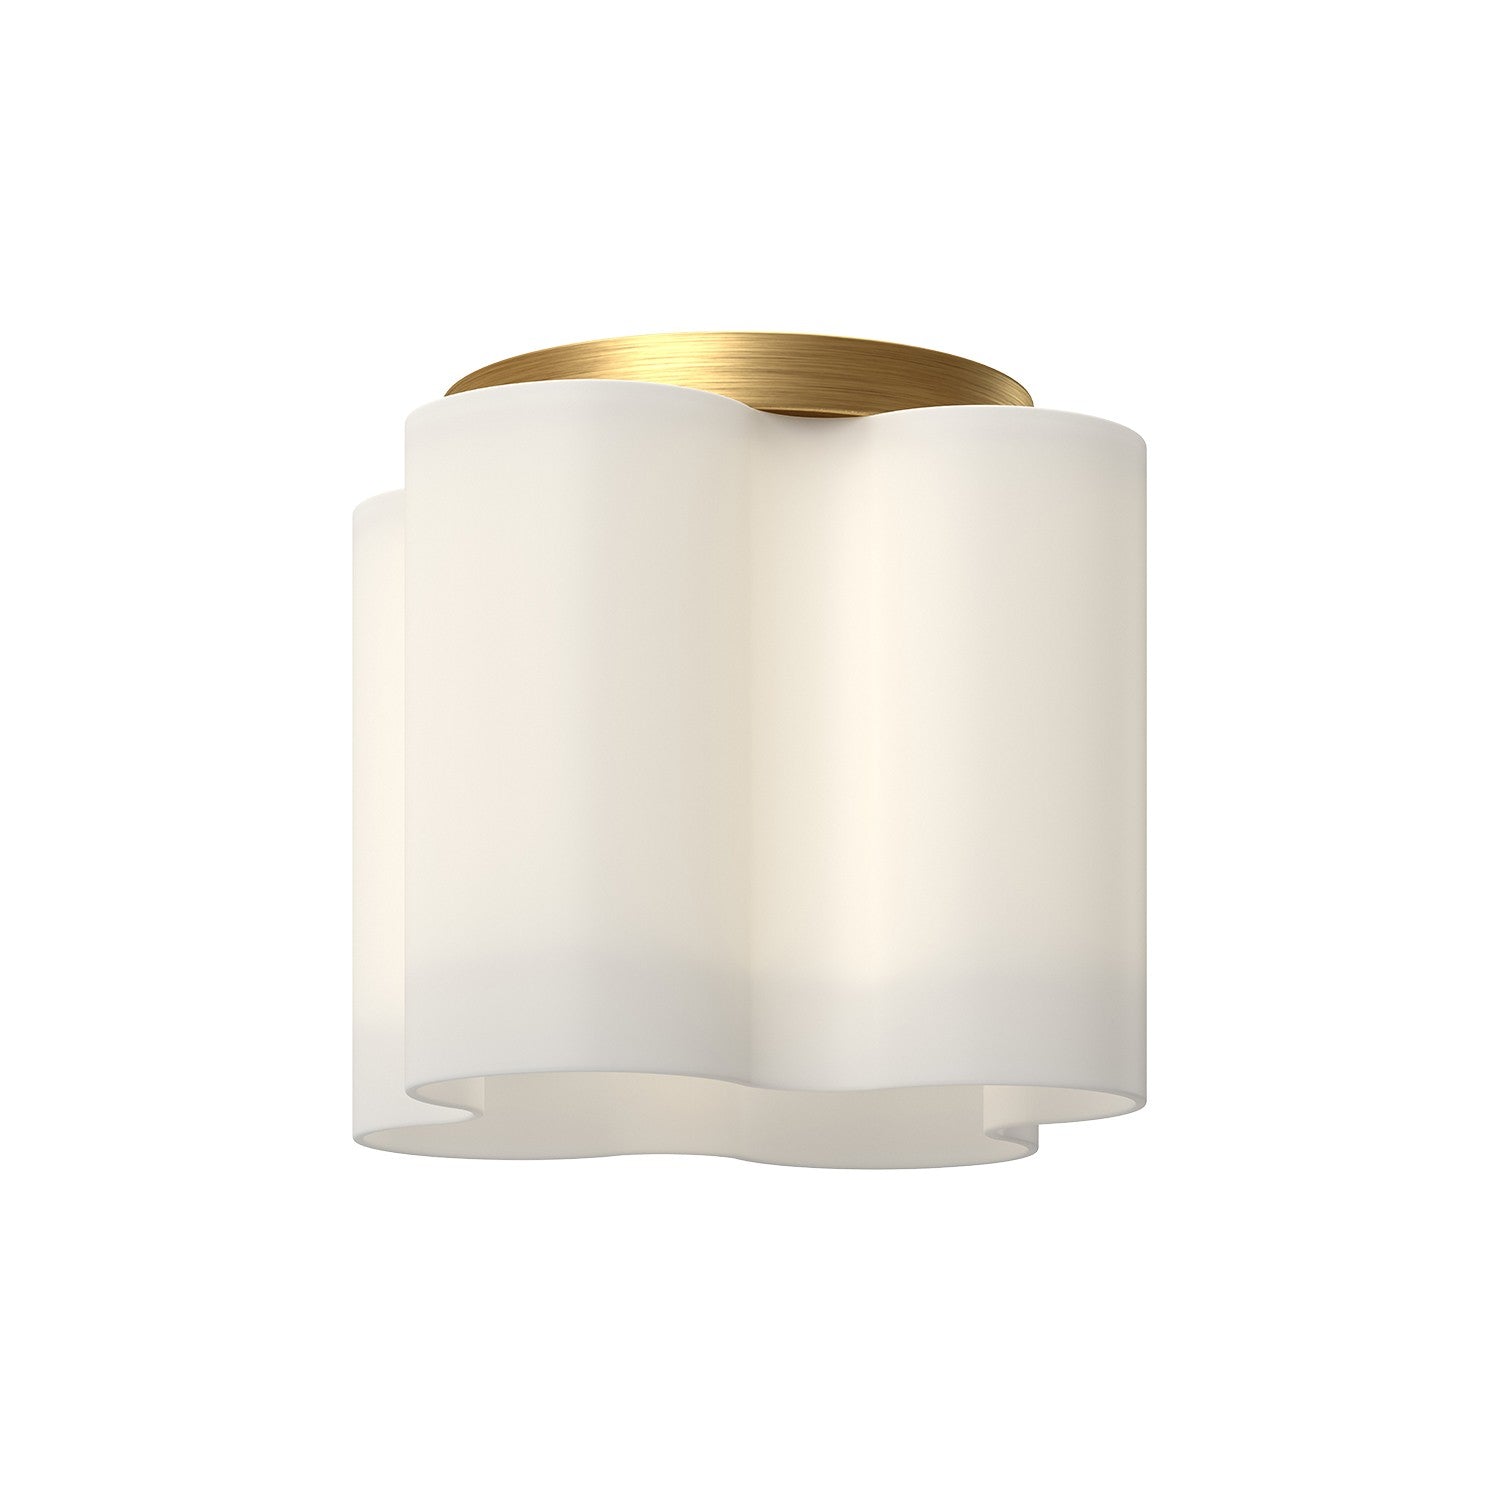 Kuzco Lighting FM54809-BG/OP Clover Ceiling Light Brushed Gold/Opal Glass